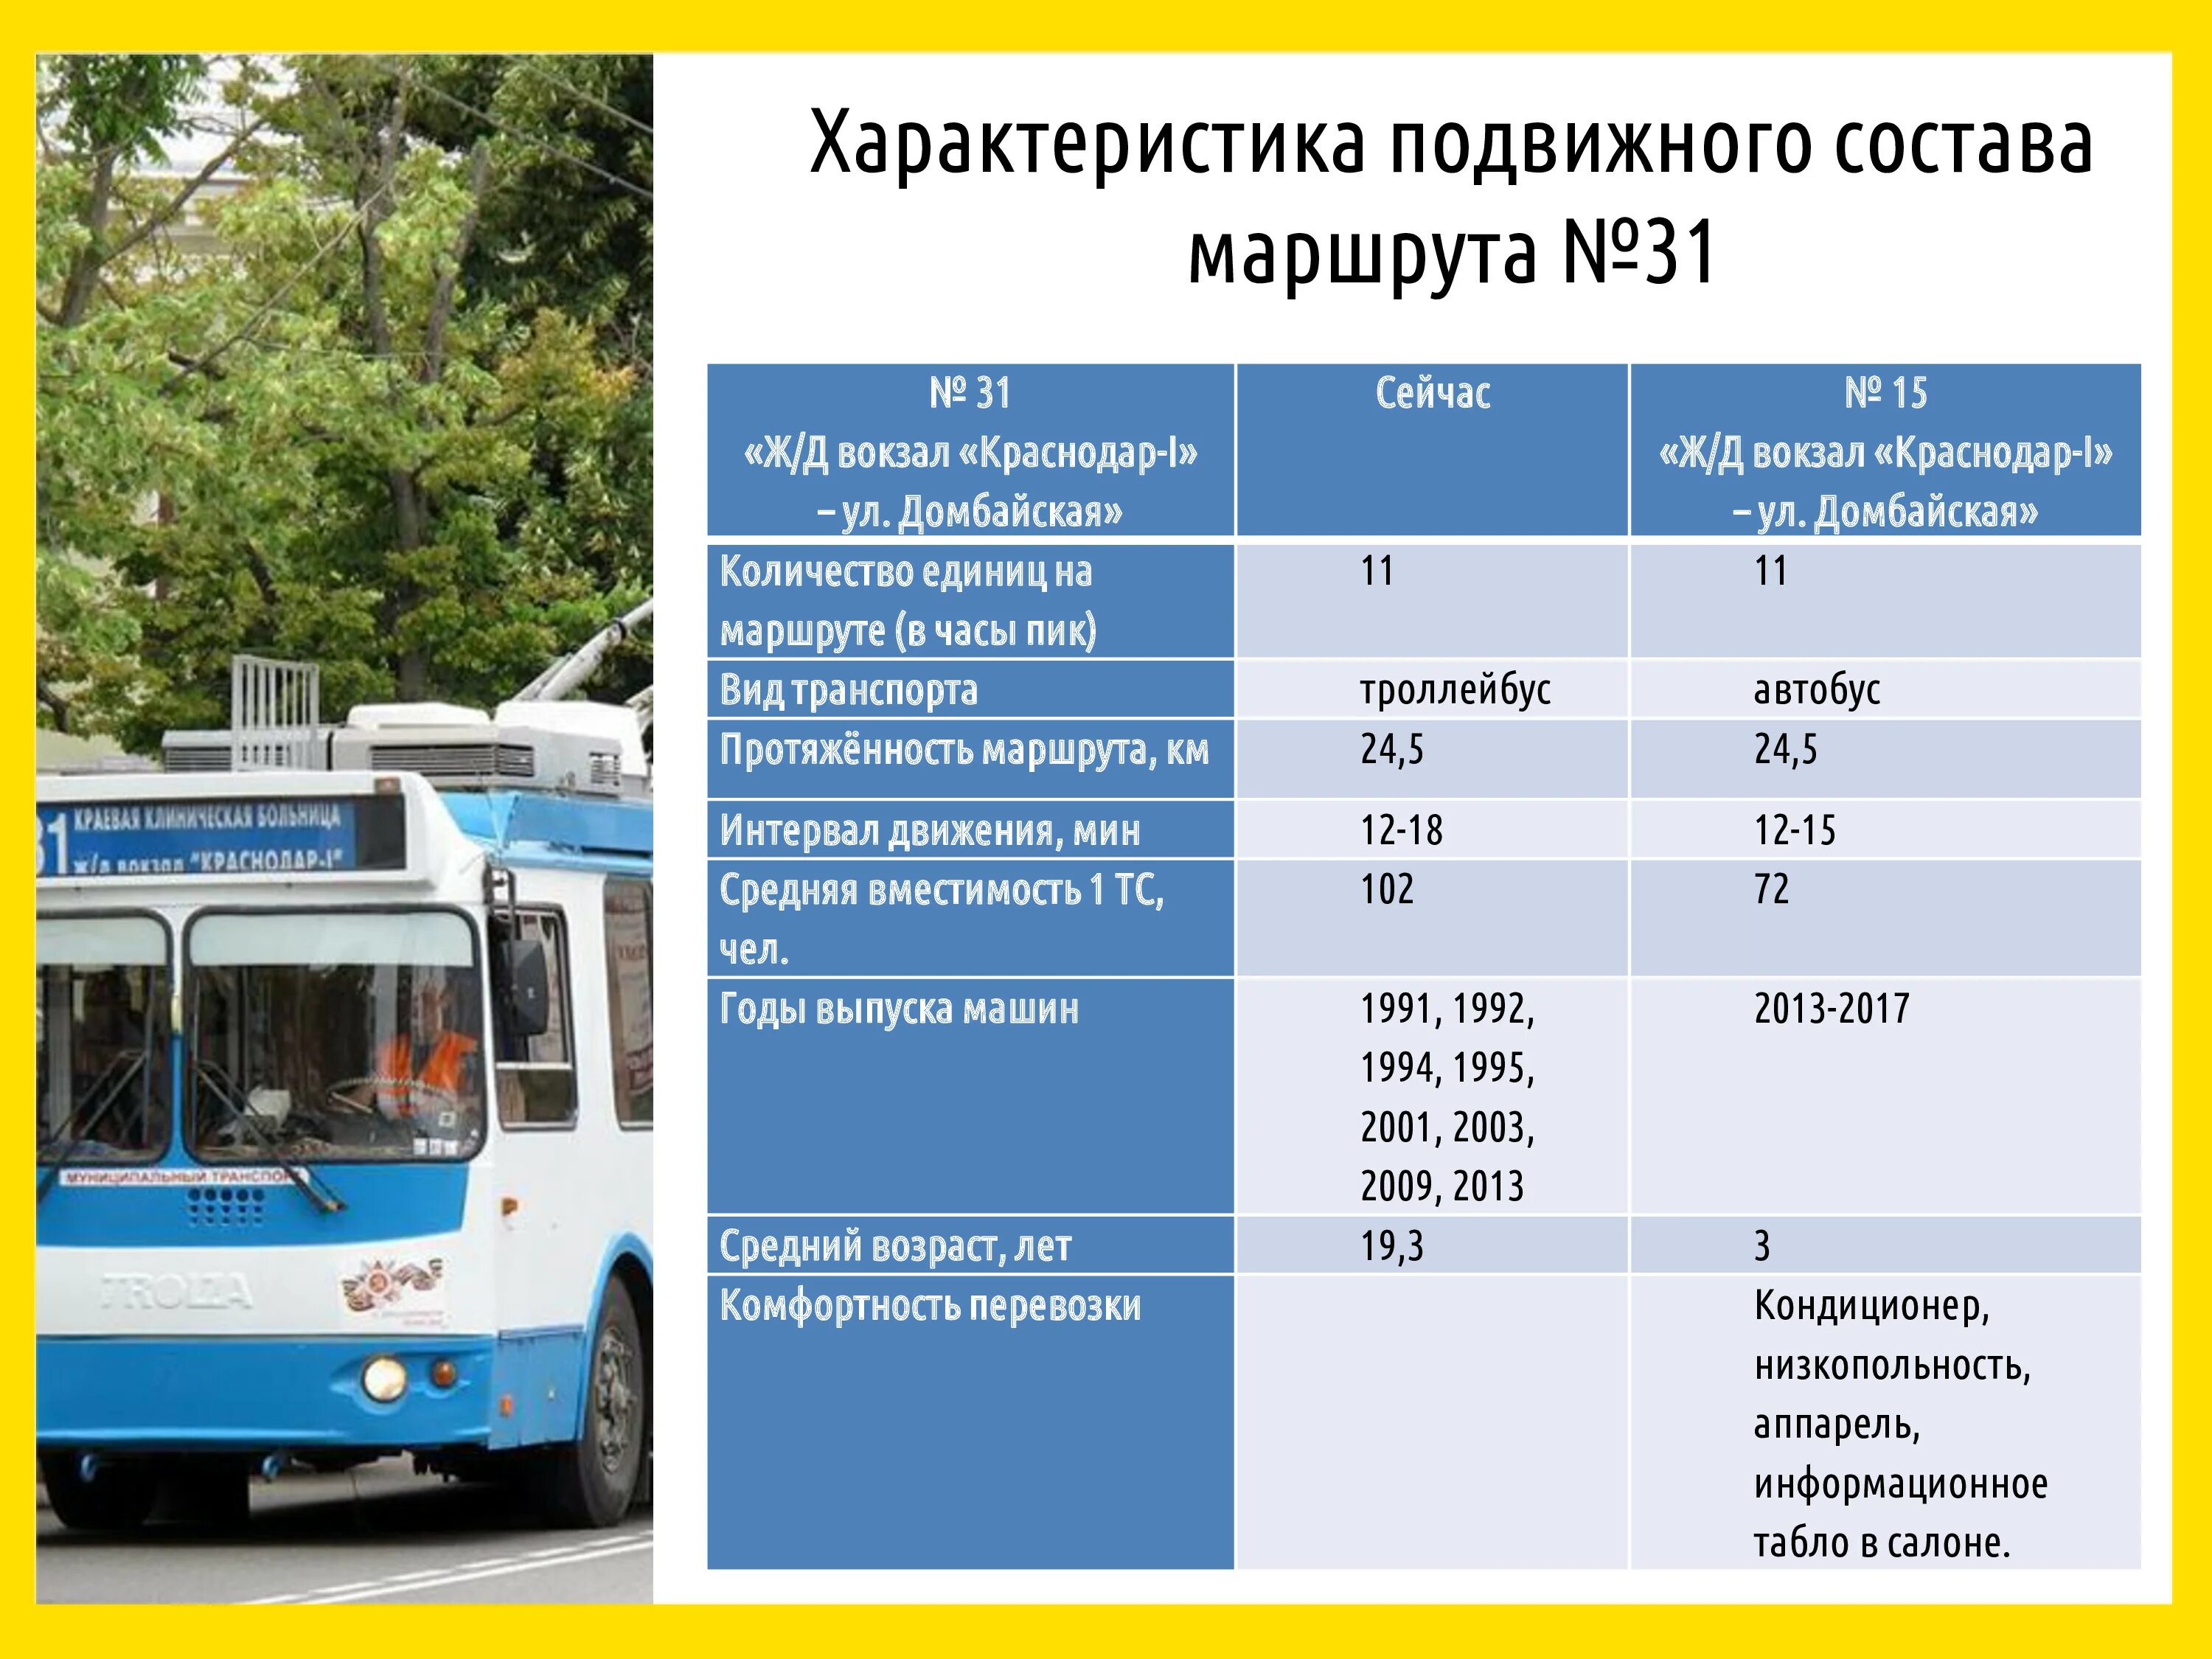 Общественный транспорт номер автобуса. Номера транспорта автобусов и троллейбусов. Троллейбус. Номер автобуса или троллейбуса. Троллейбус характеристики.